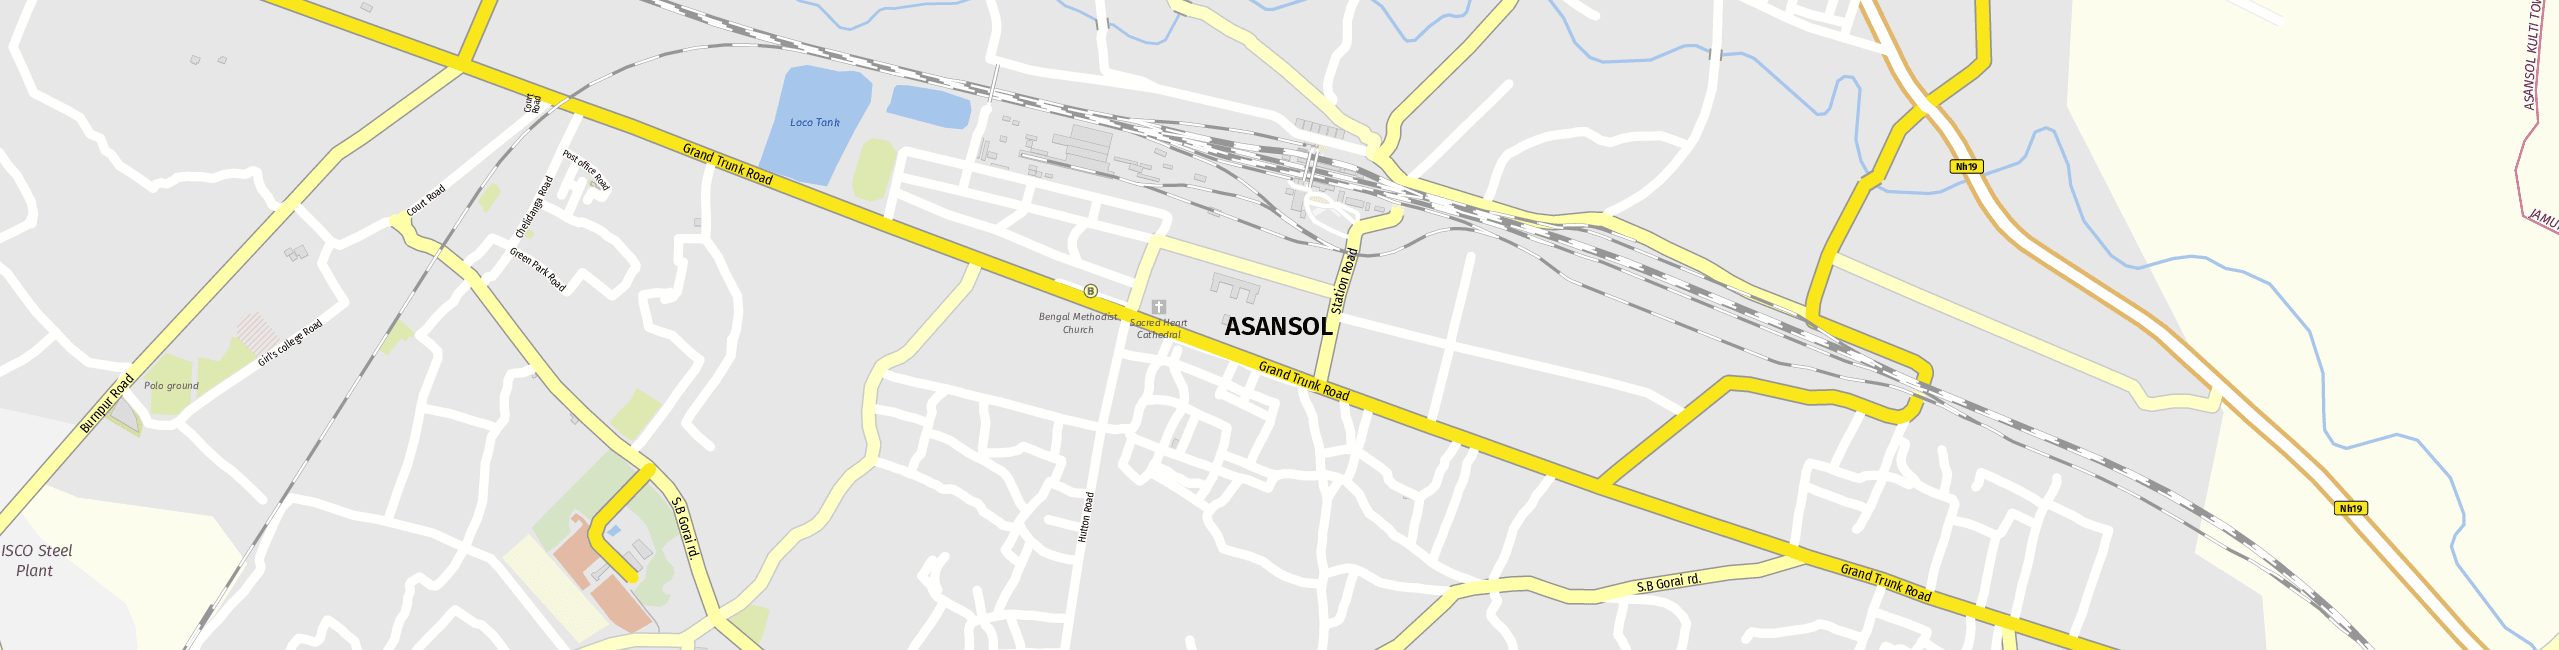 Stadtplan Asansol zum Downloaden.